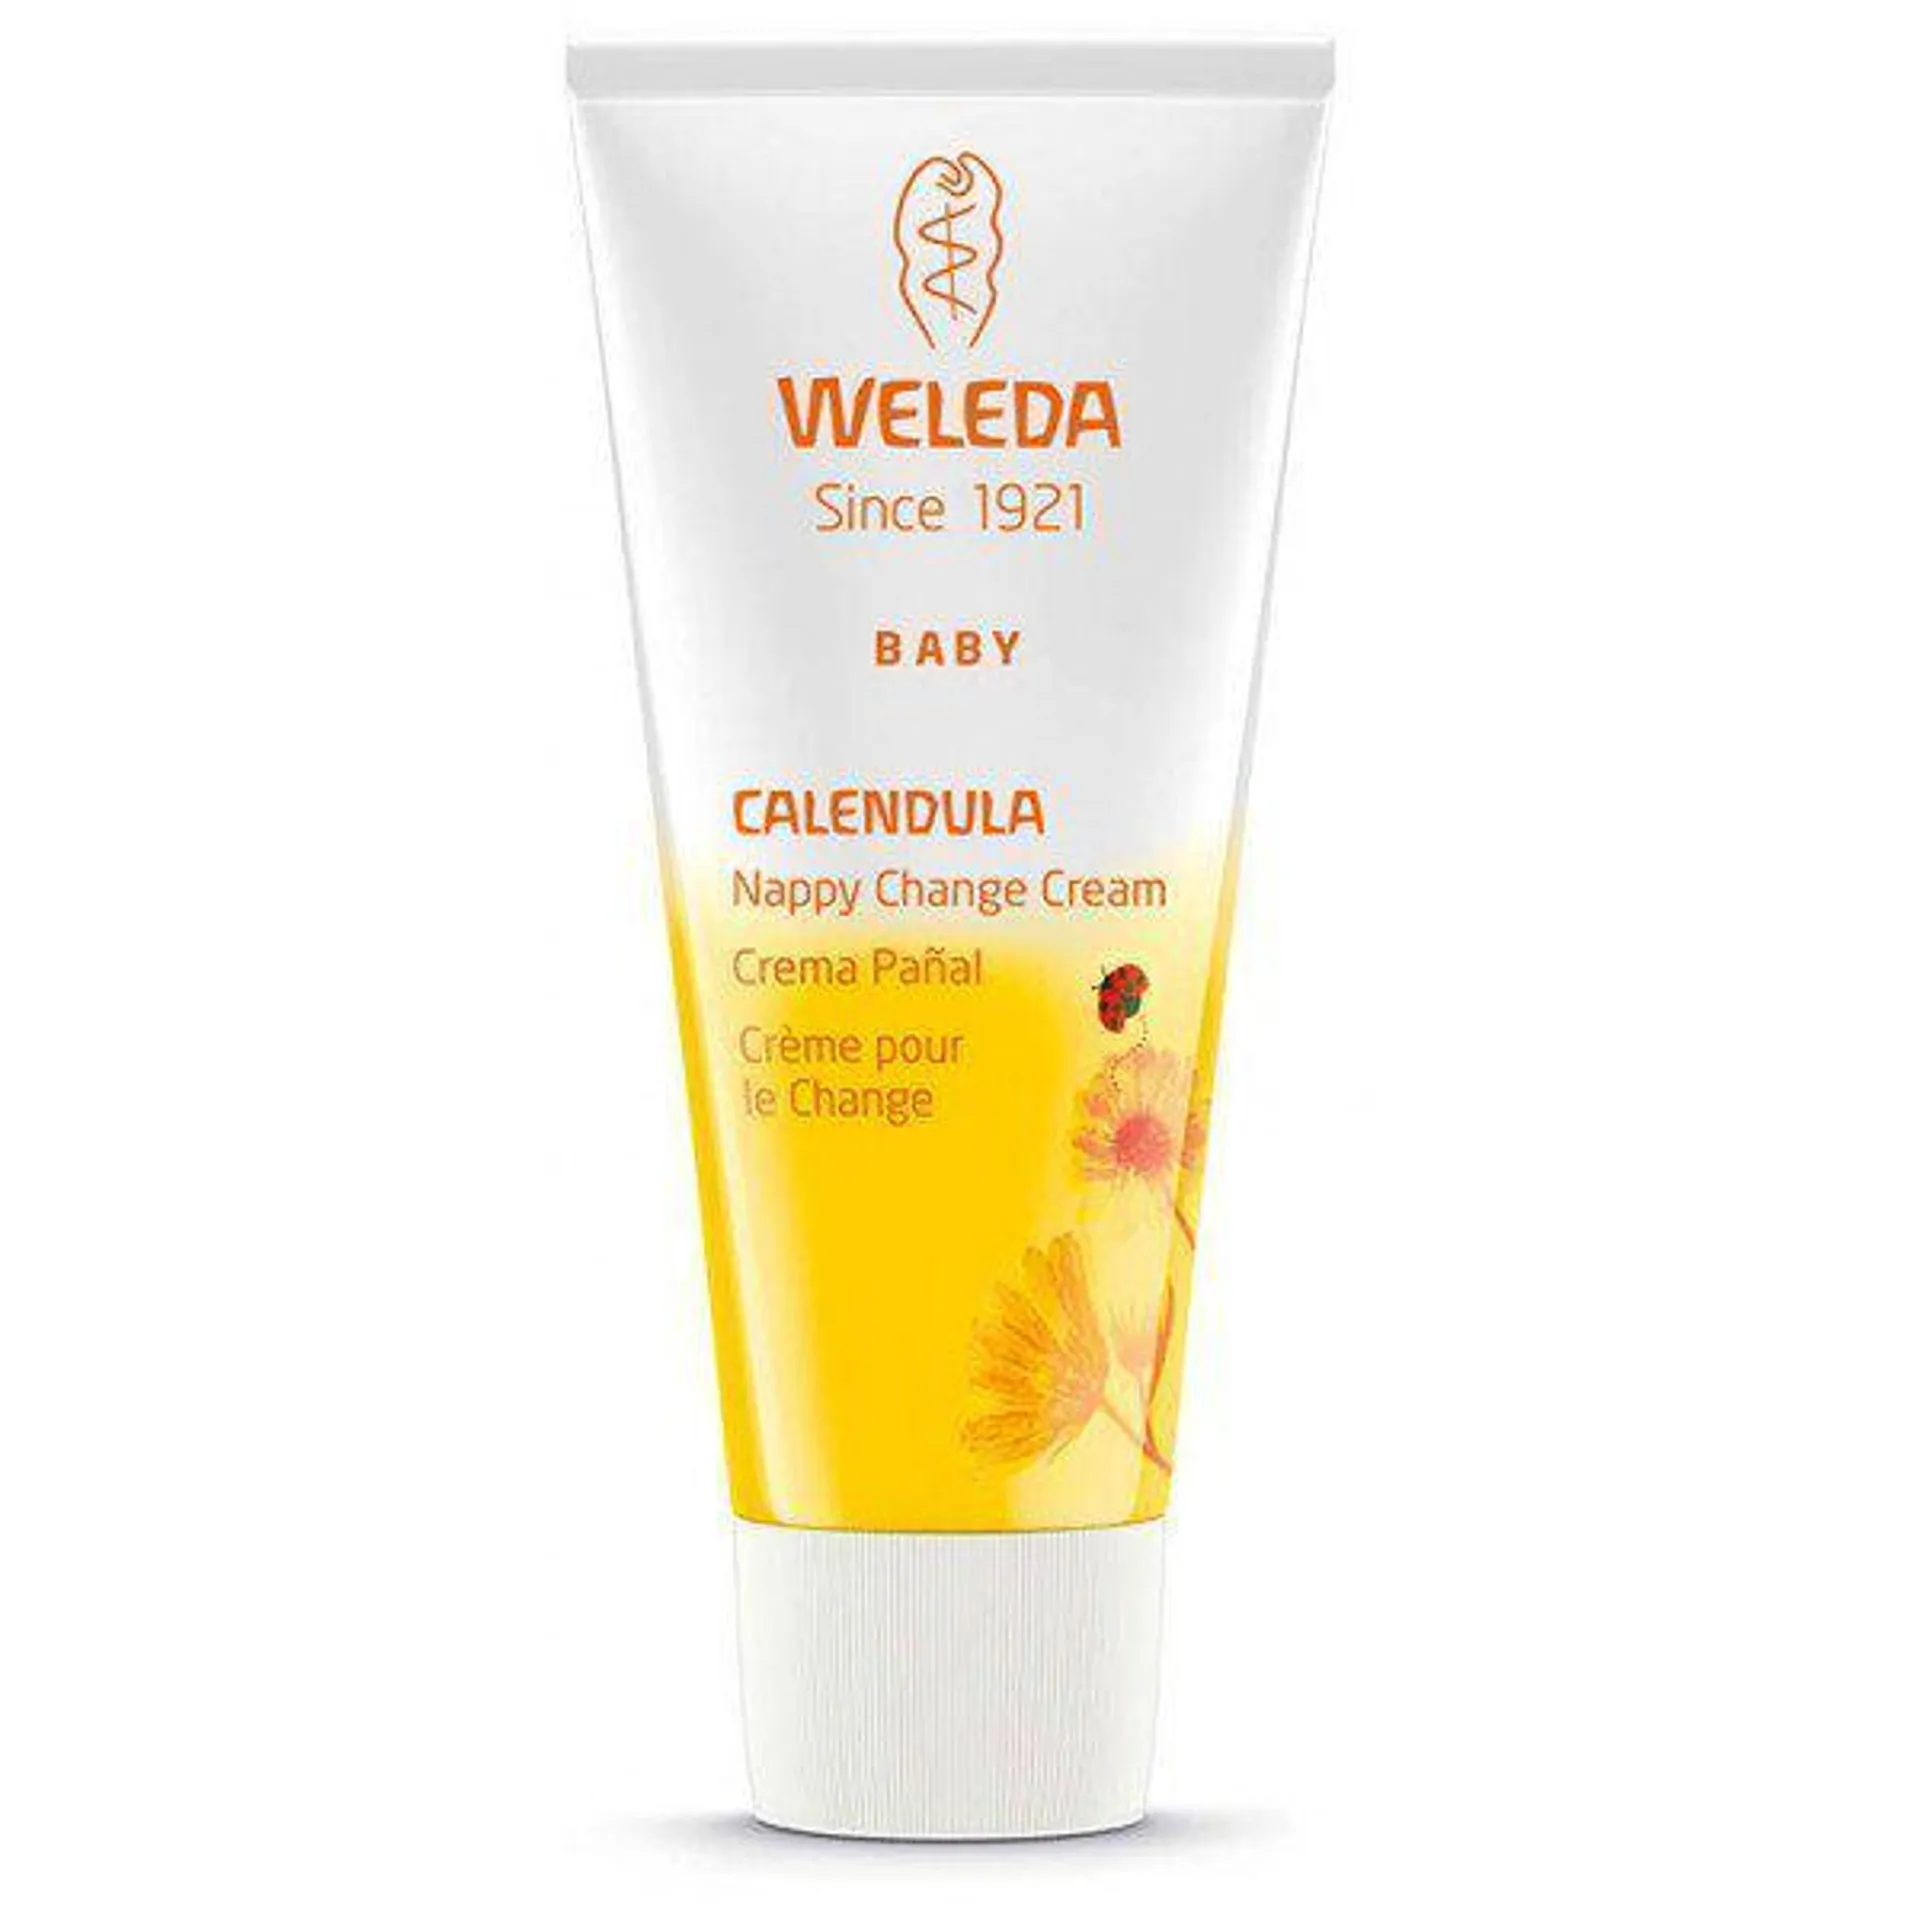 Baby crema pañal de Caléndula – Weleda